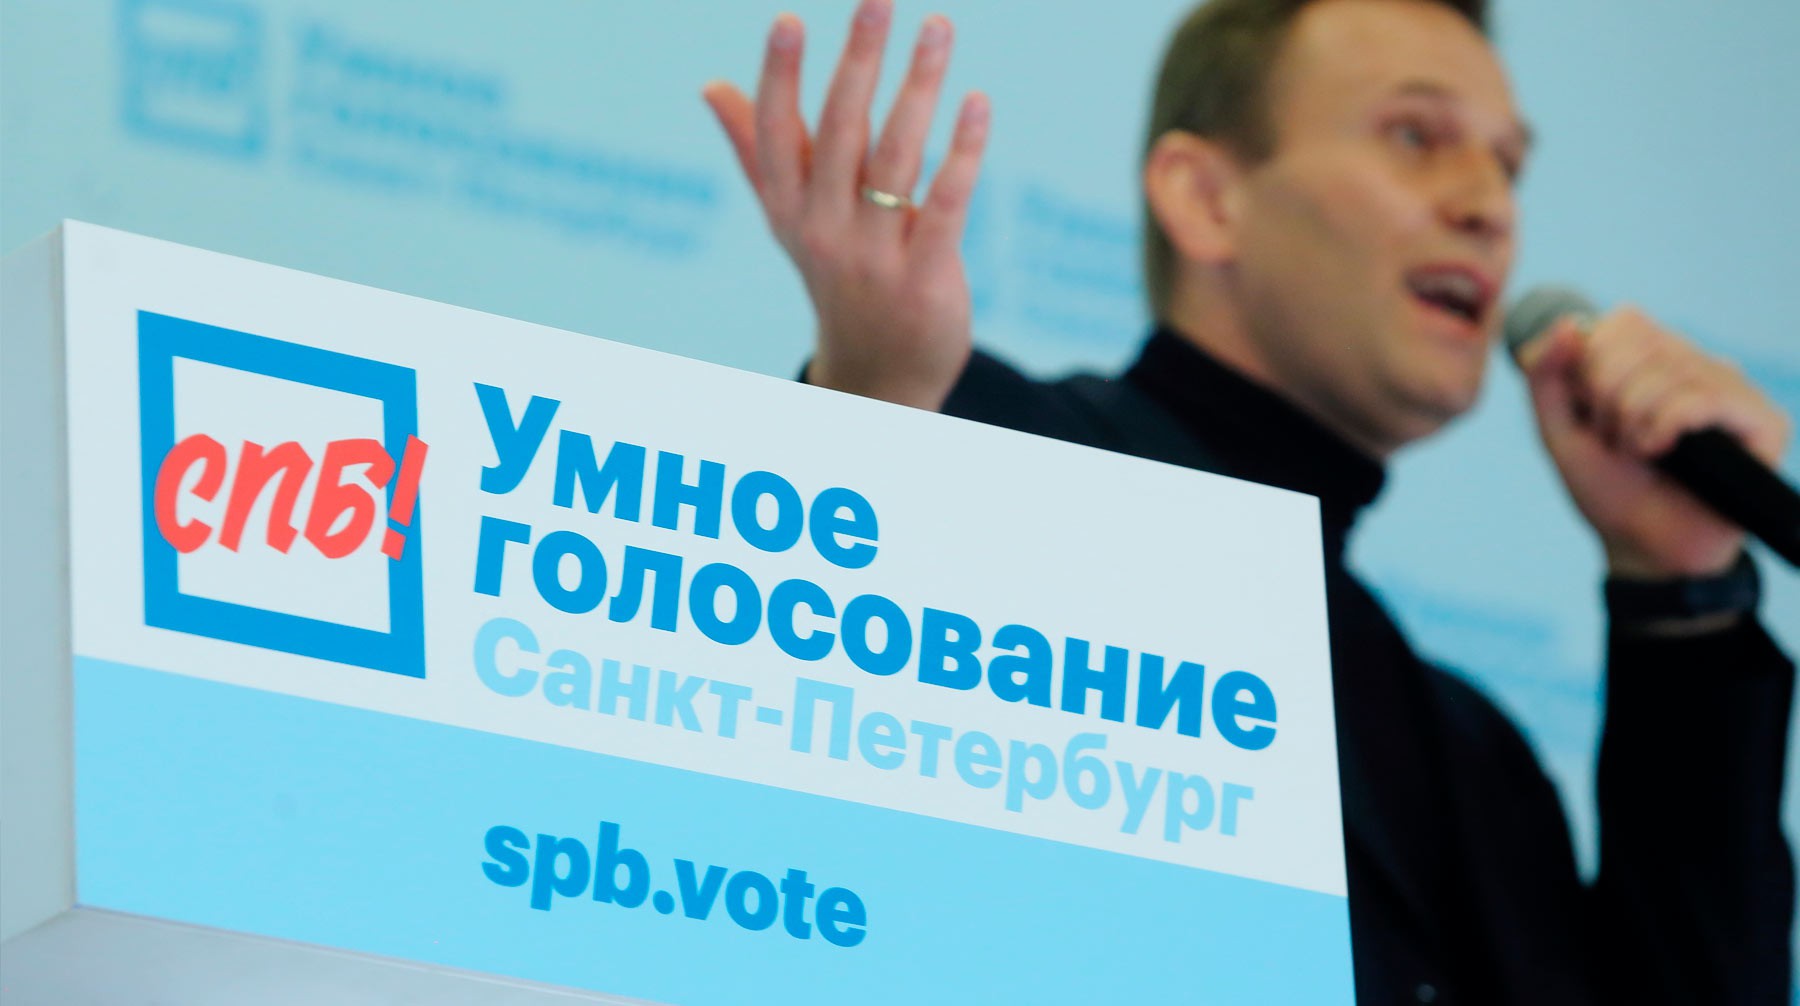 Dailystorm - Единороссы захотели переименовать «Умное голосование»